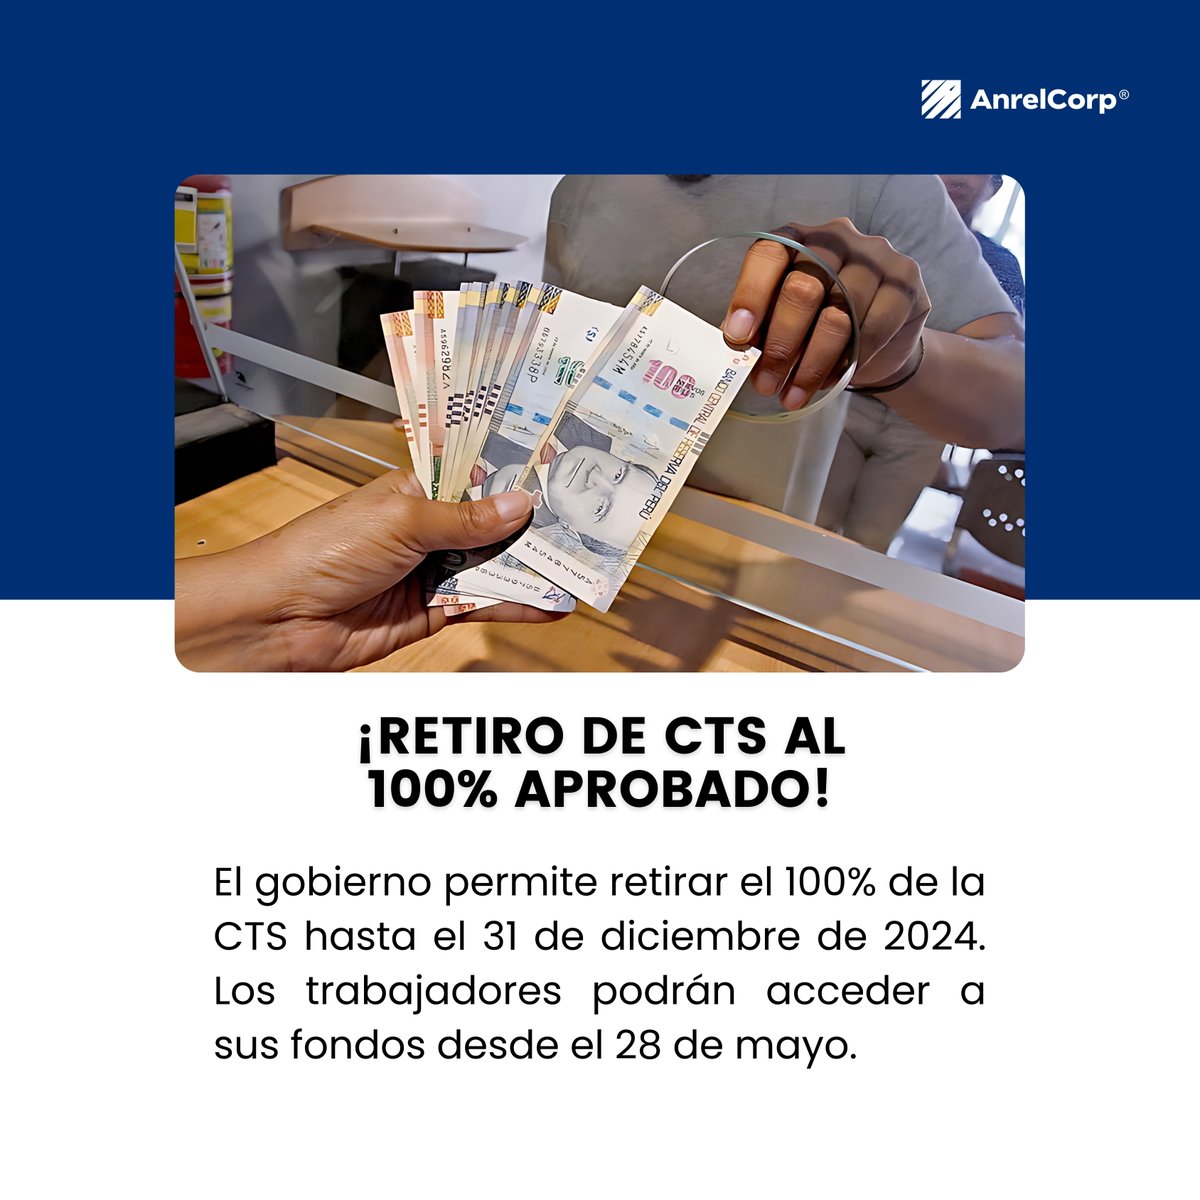 ¿Sabías que puedes retirar el 100% de tu CTS? 💰Disponible hasta diciembre de 2024. ✅Accede a tus fondos desde el 28 de mayo. 🌐Más información: wir.bi/QfMn3dcDn

#CTS2024 #CTS #EconómicaPerú #Perú2024 #noticias #anrelcorp #peru #negocios #economía #retiro #Gobierno